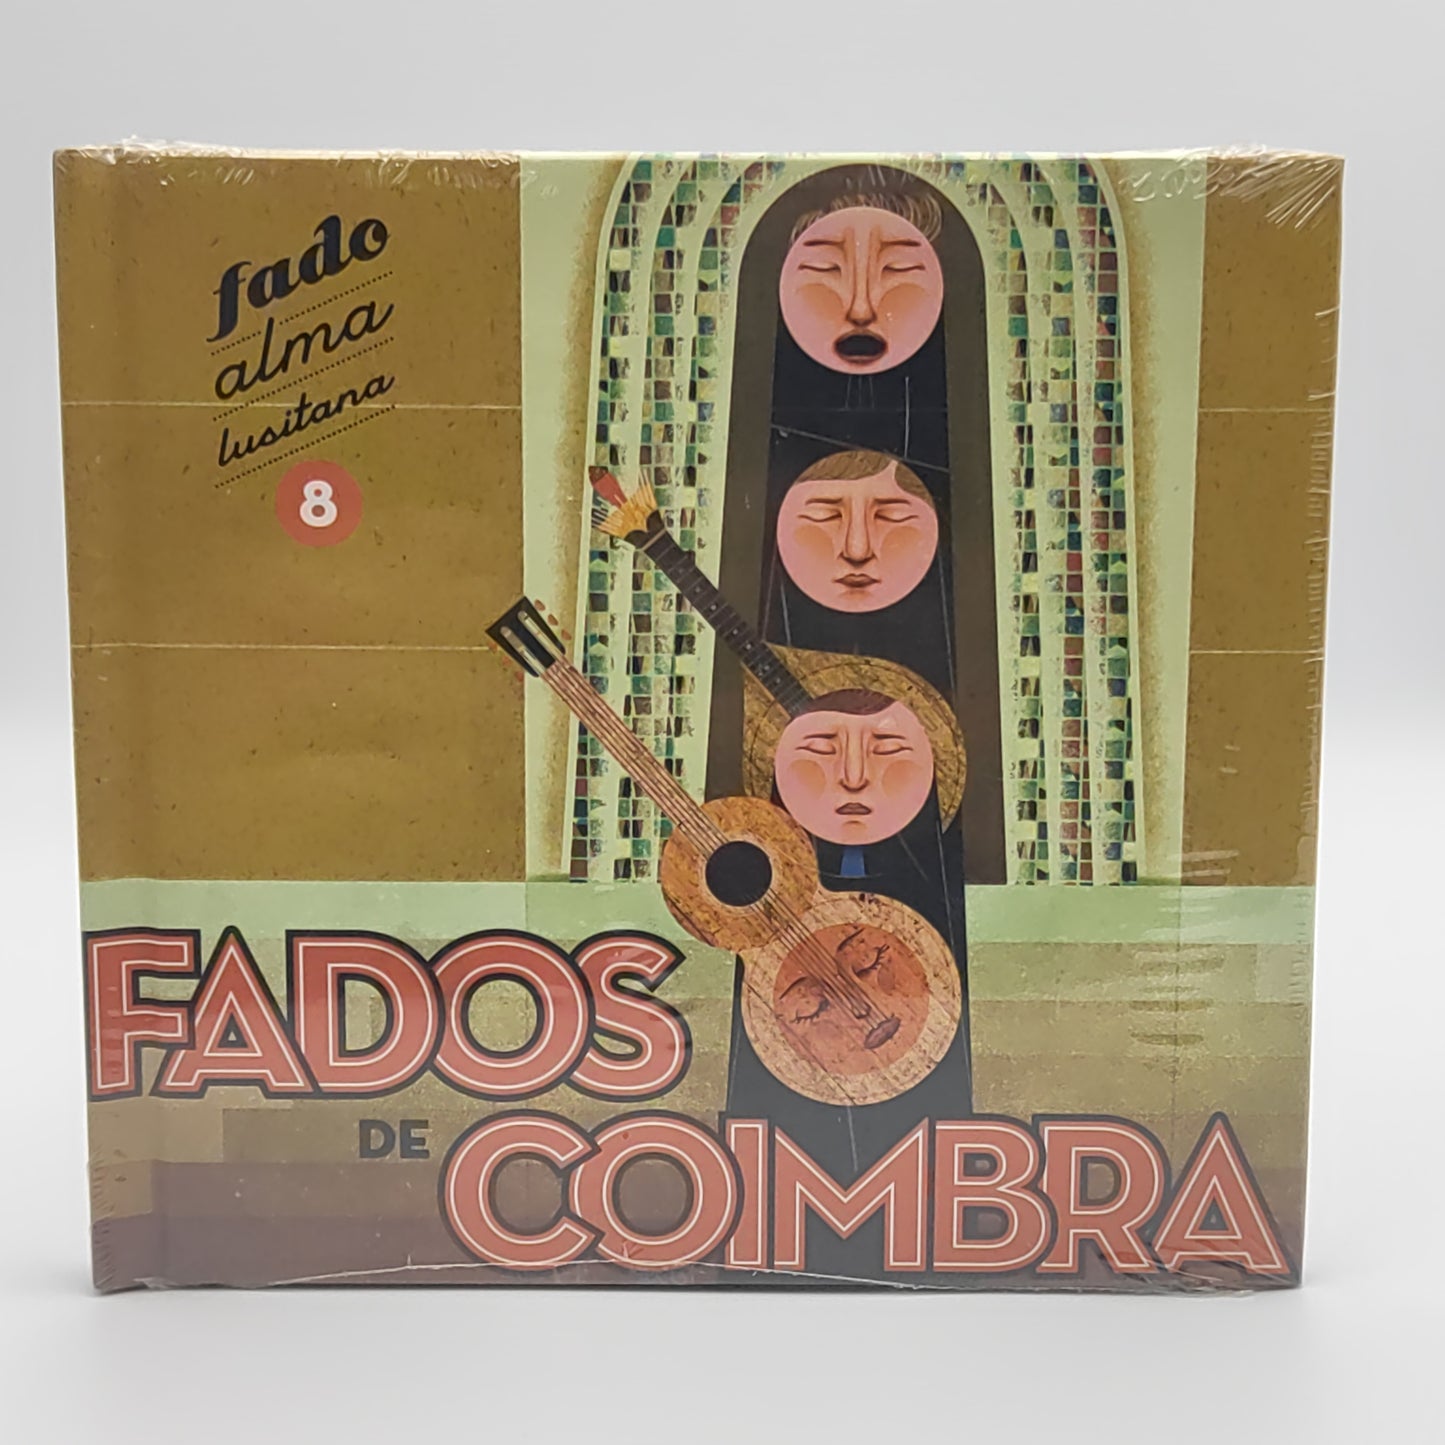 Fados de Coimbra - Fado Alma Lusitana 8